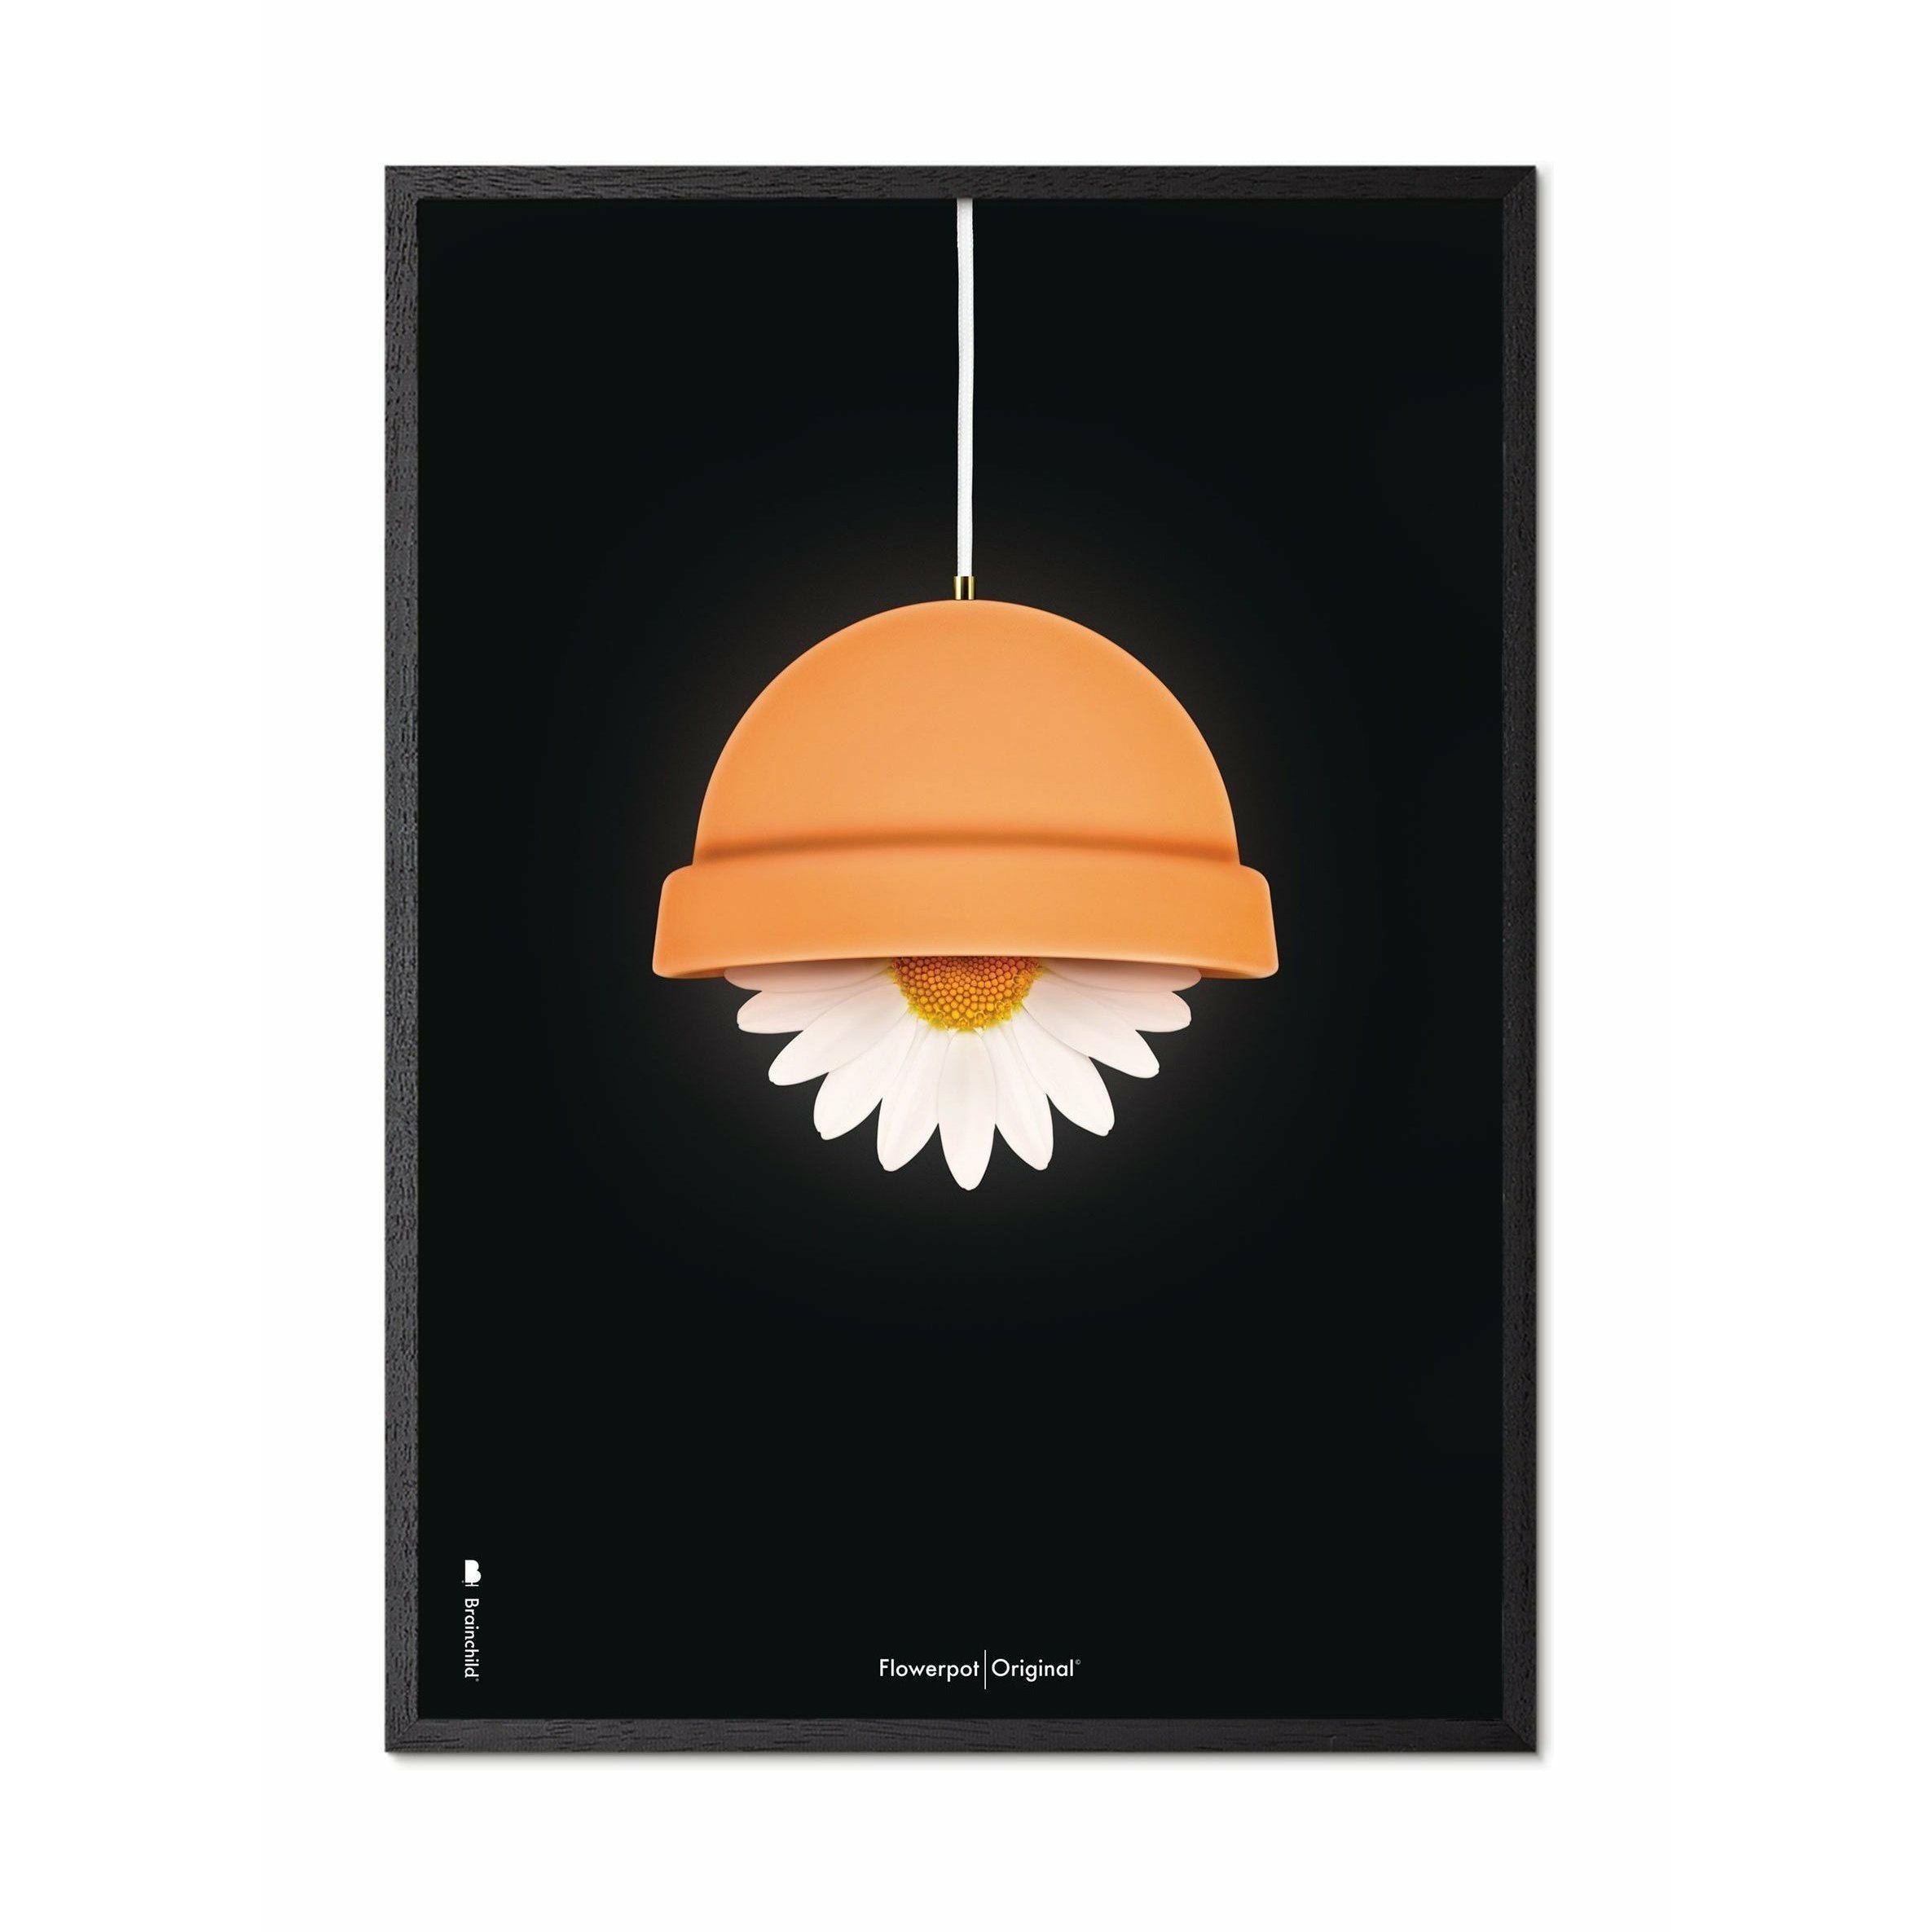 Brainchild Flowerpot Classic Poster, Rahmen in schwarzer Lackholz 50x70 cm, schwarzer Hintergrund